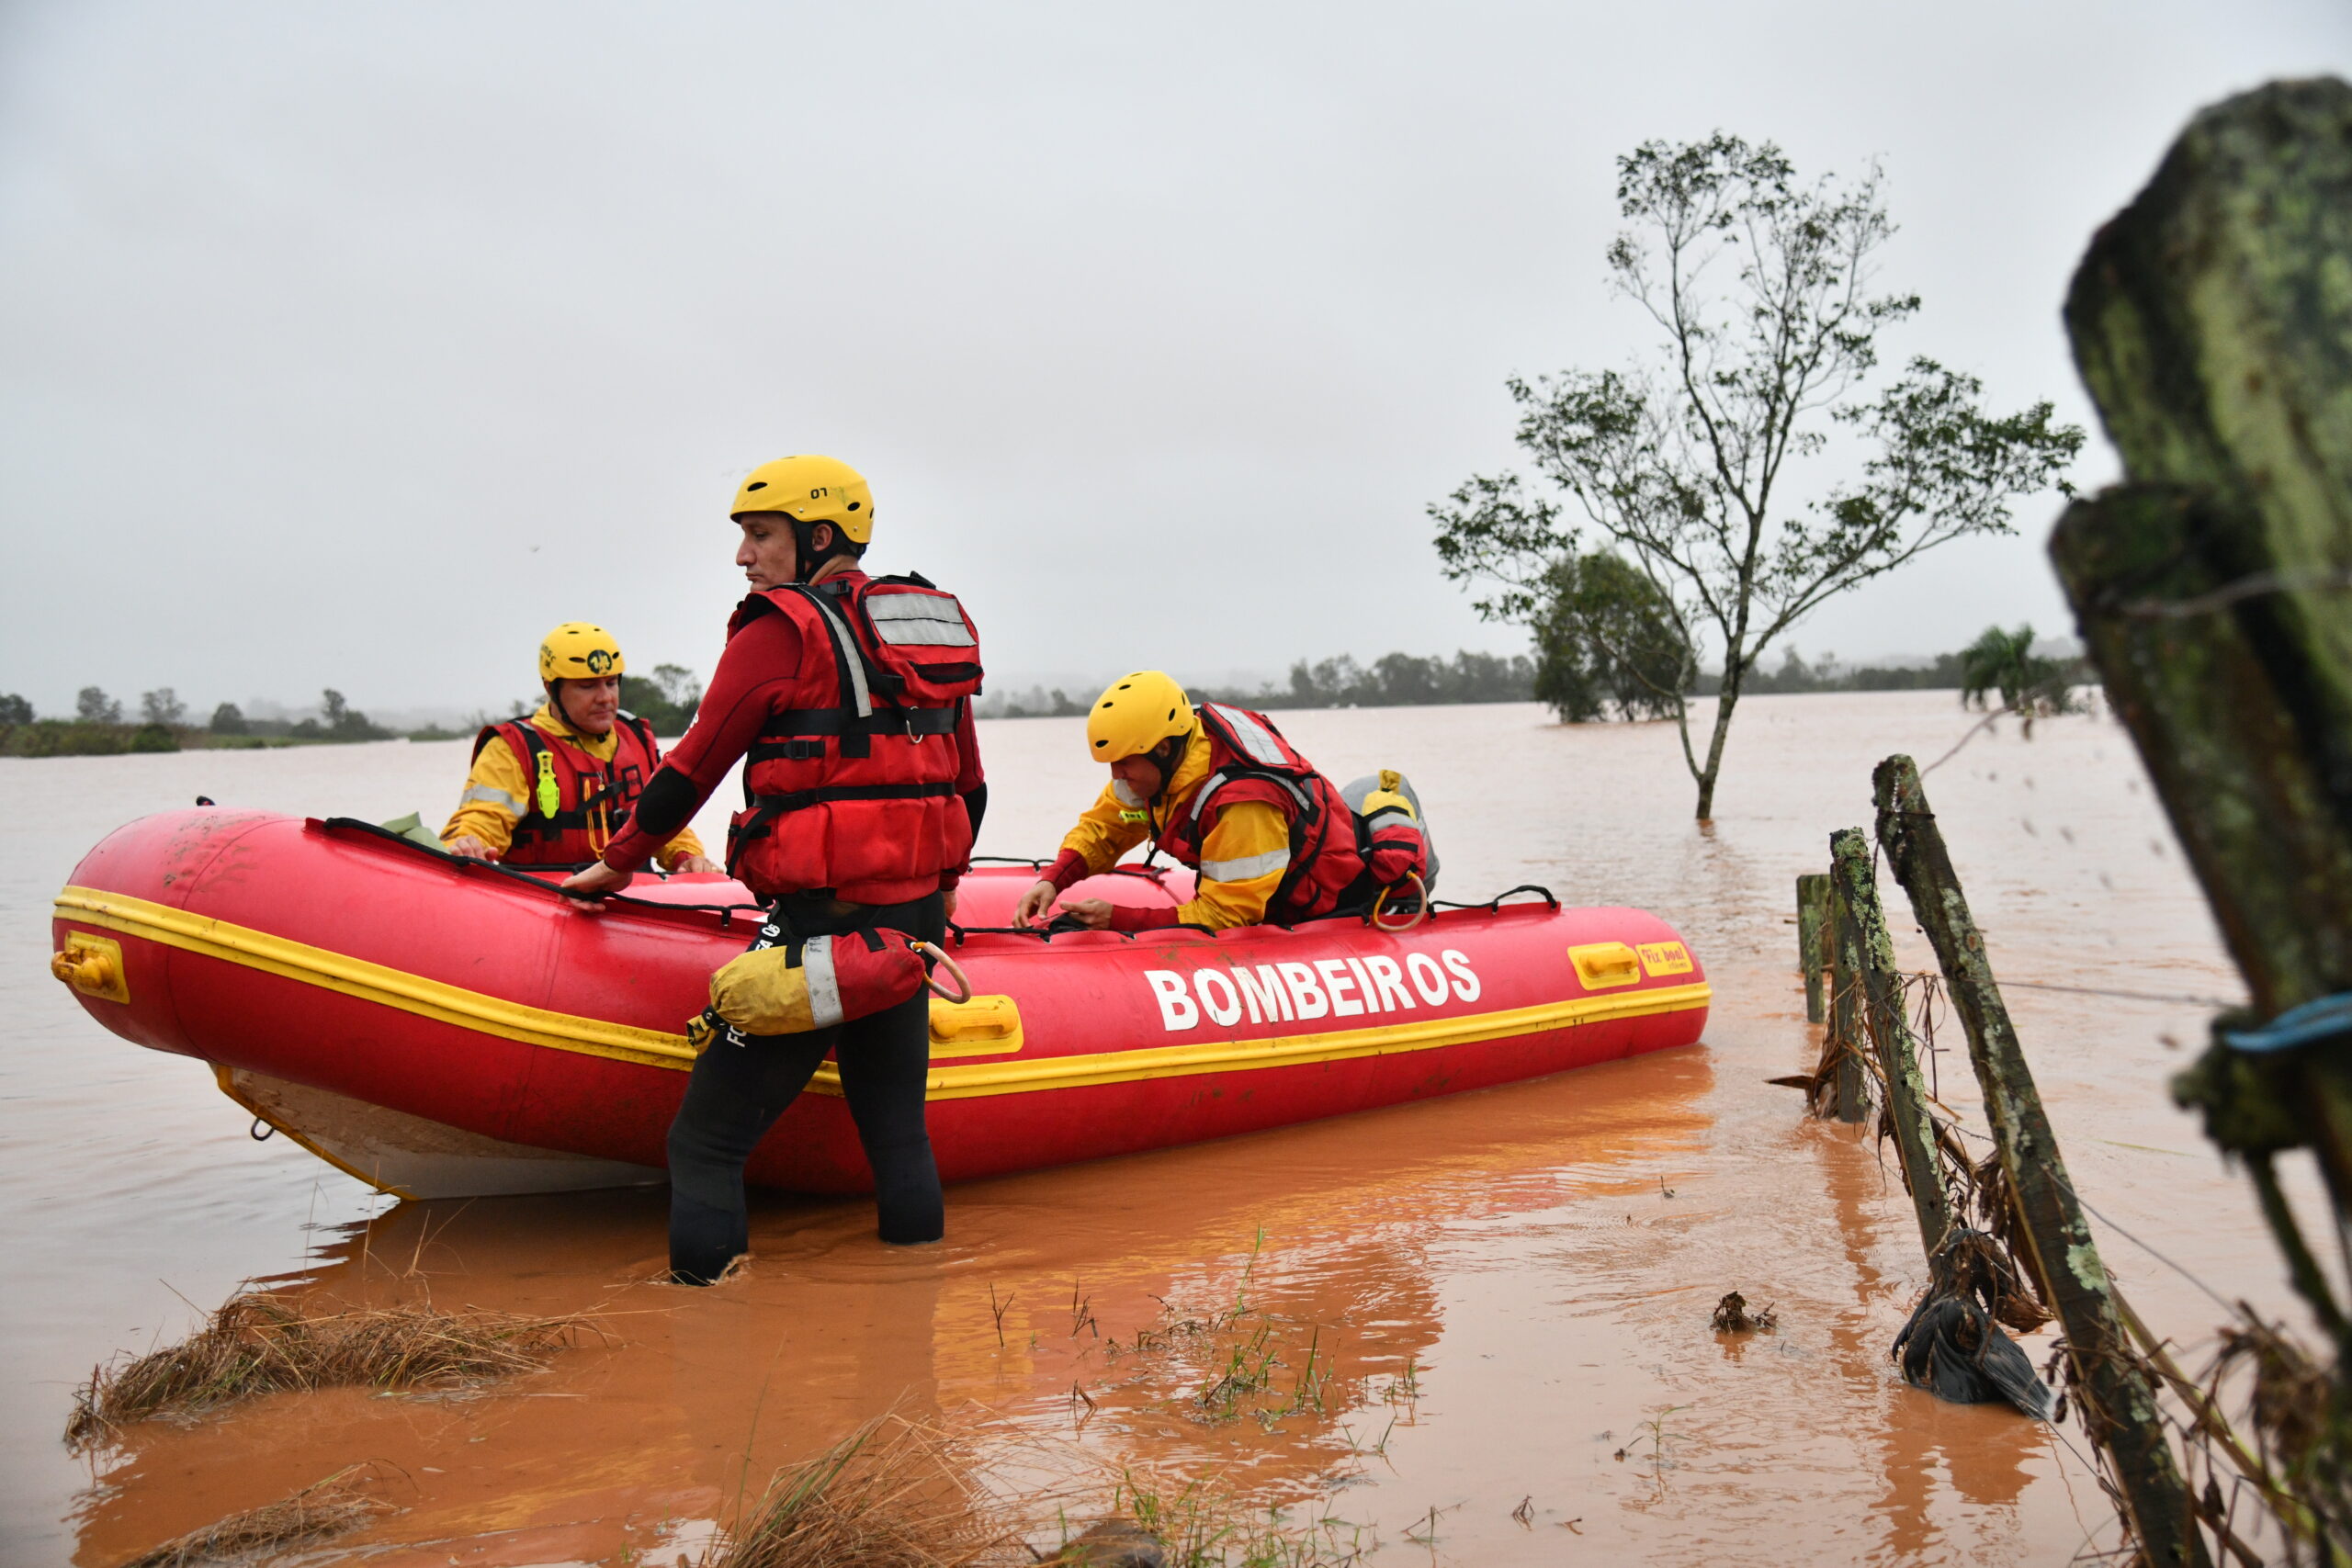 Bombeiros catarinenses resgatam 360 pessoas e 30 animais no Rio Grande do Sul